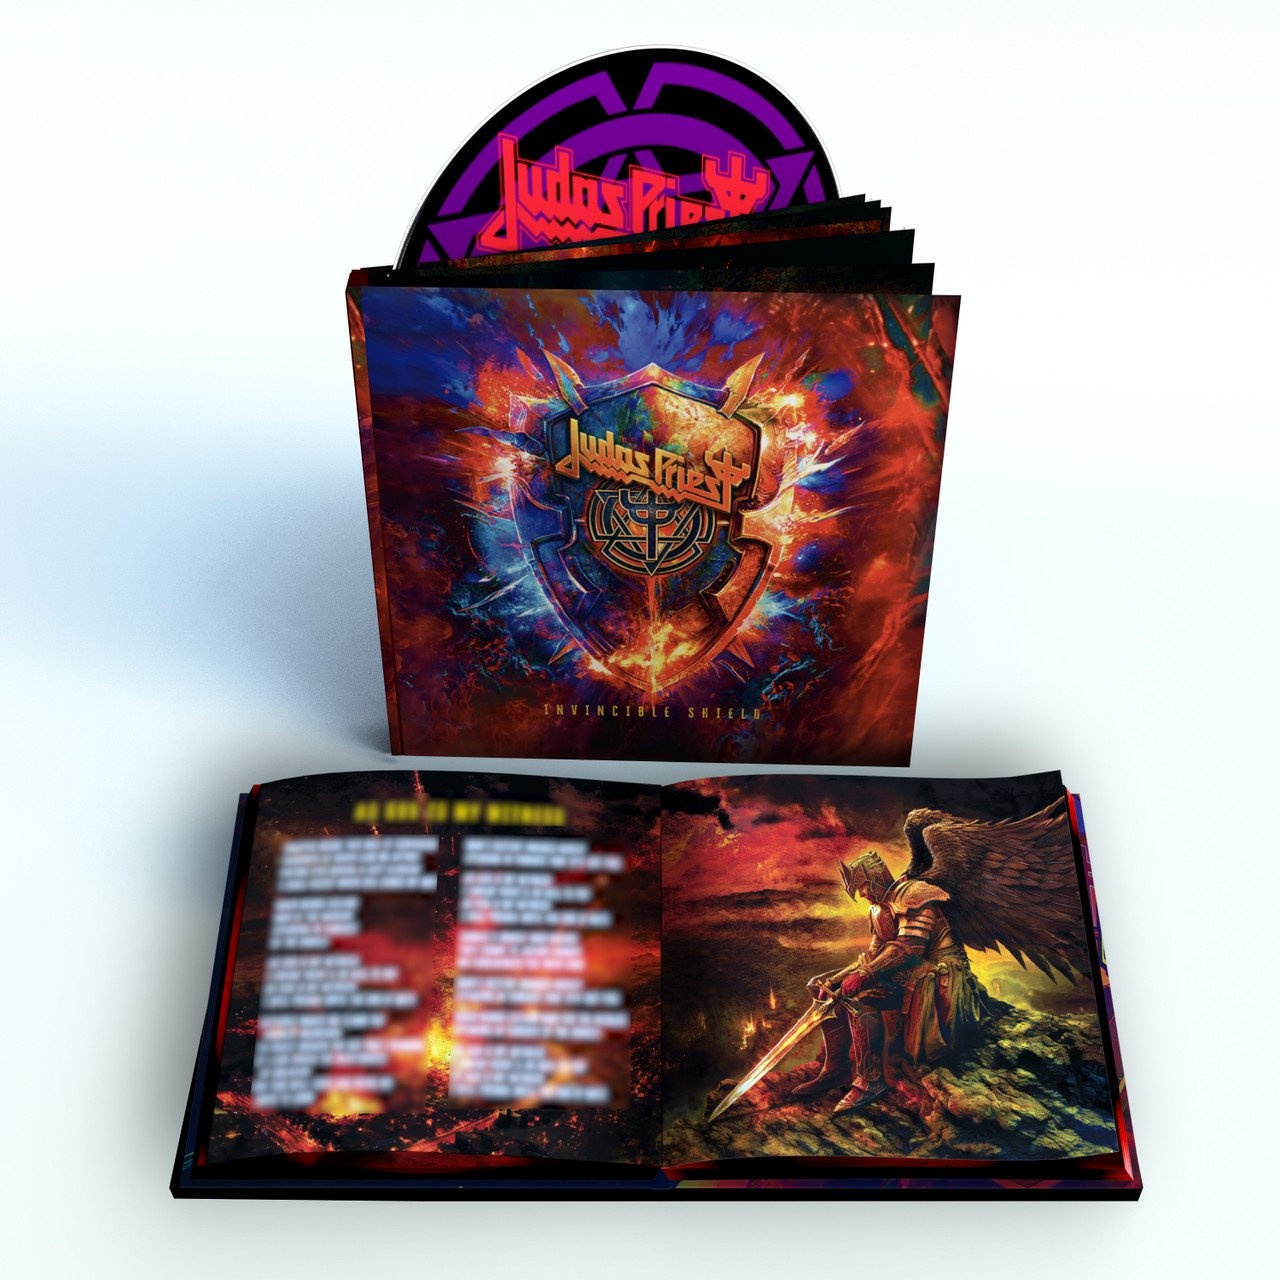 Judas Priest - Invincible Shield (Deluxe Edition) (2024). Judas Priest - Invincible Shield (2024) CD. Judas Priest - 08.03.2024 - "Invincible Shield". Judas Priest Invisible Shield распаковка. Invincible shield judas priest альбомы